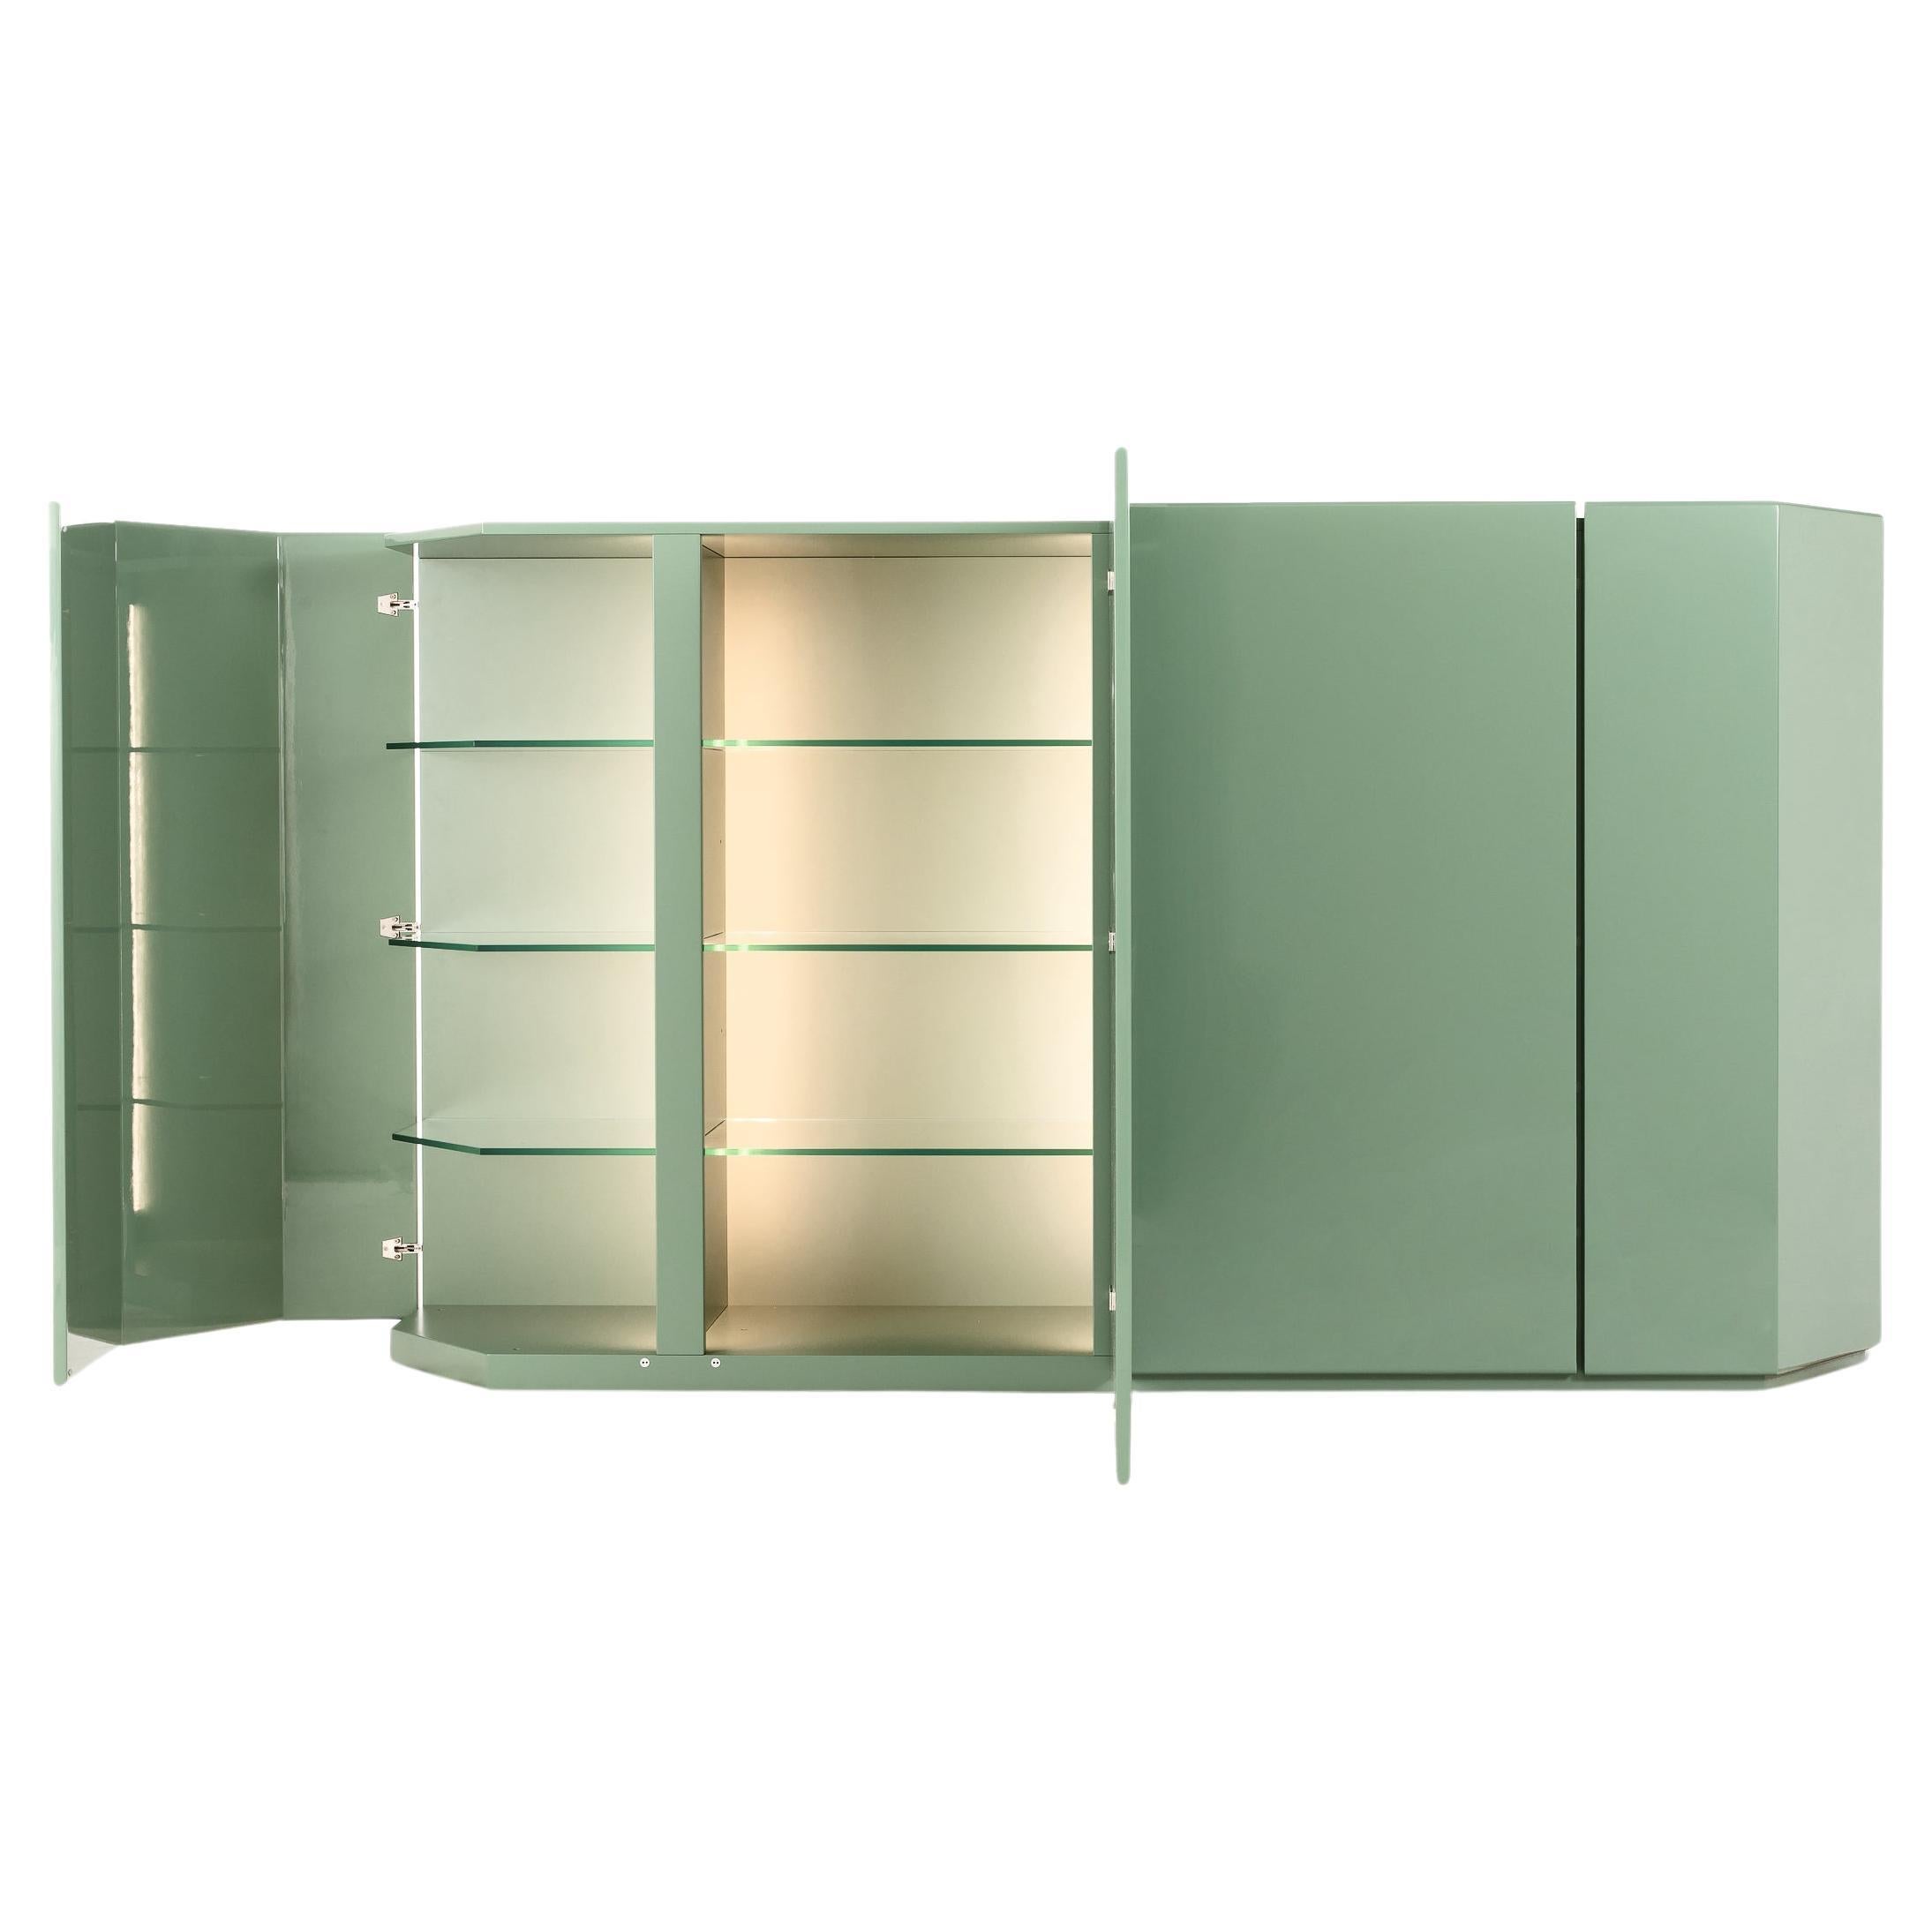 Bramante Storage Cabinet by Japanese Architect Kazuhide Takahama for Cassina